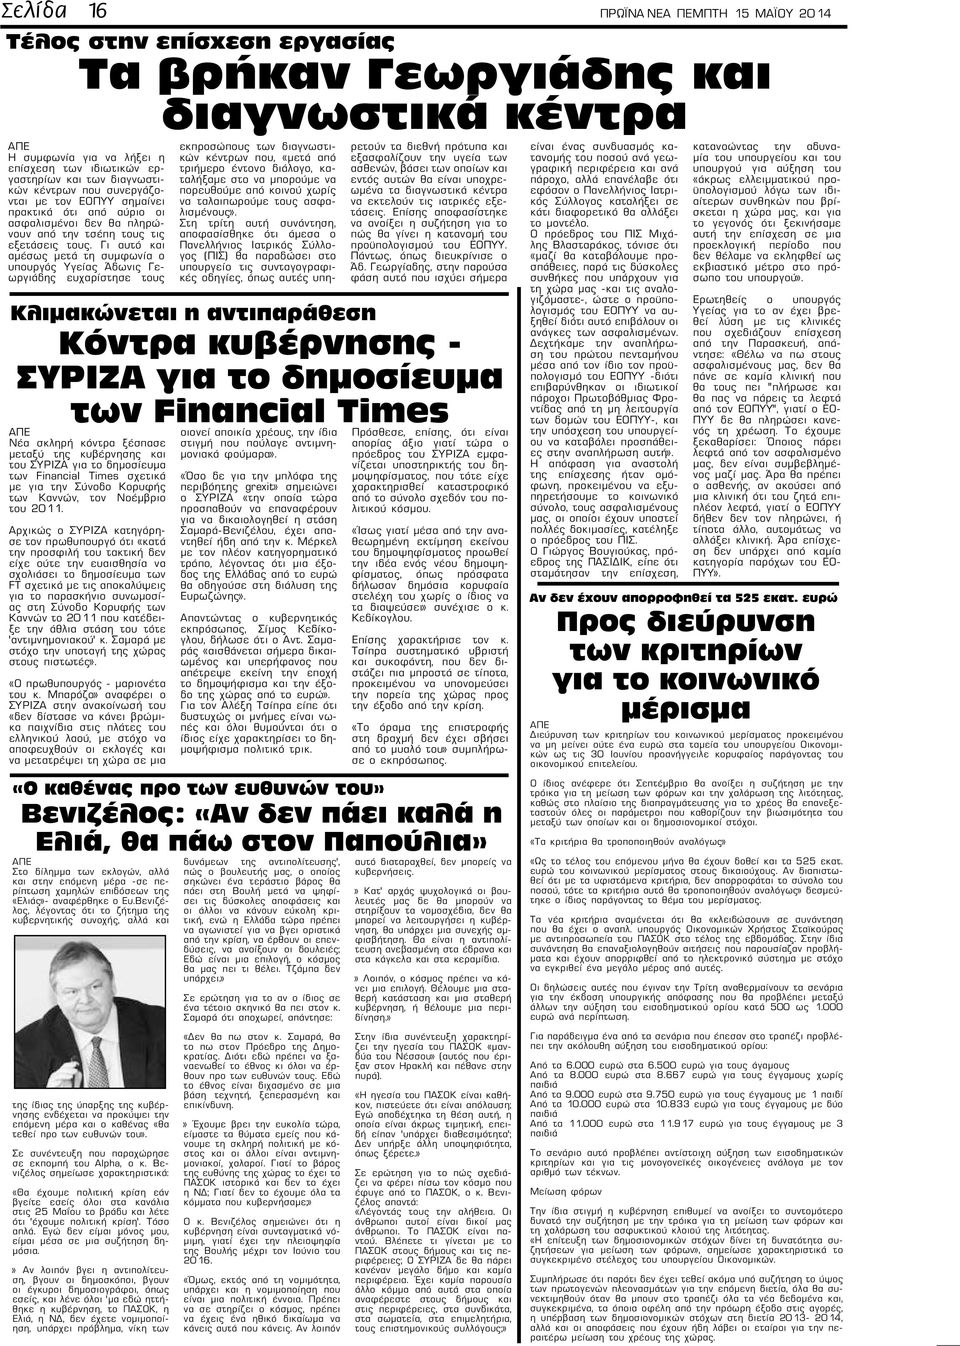 Γι αυτό και αμέσως μετά τη συμφωνία ο υπουργός Υγείας Άδωνις Γεωργιάδης ευχαρίστησε τους Στο δίλημμα των εκλογών, αλλά και στην επόμενη μέρα -σε περίπτωση χαμηλών επιδόσεων της «Ελιάς»- αναφέρθηκε ο